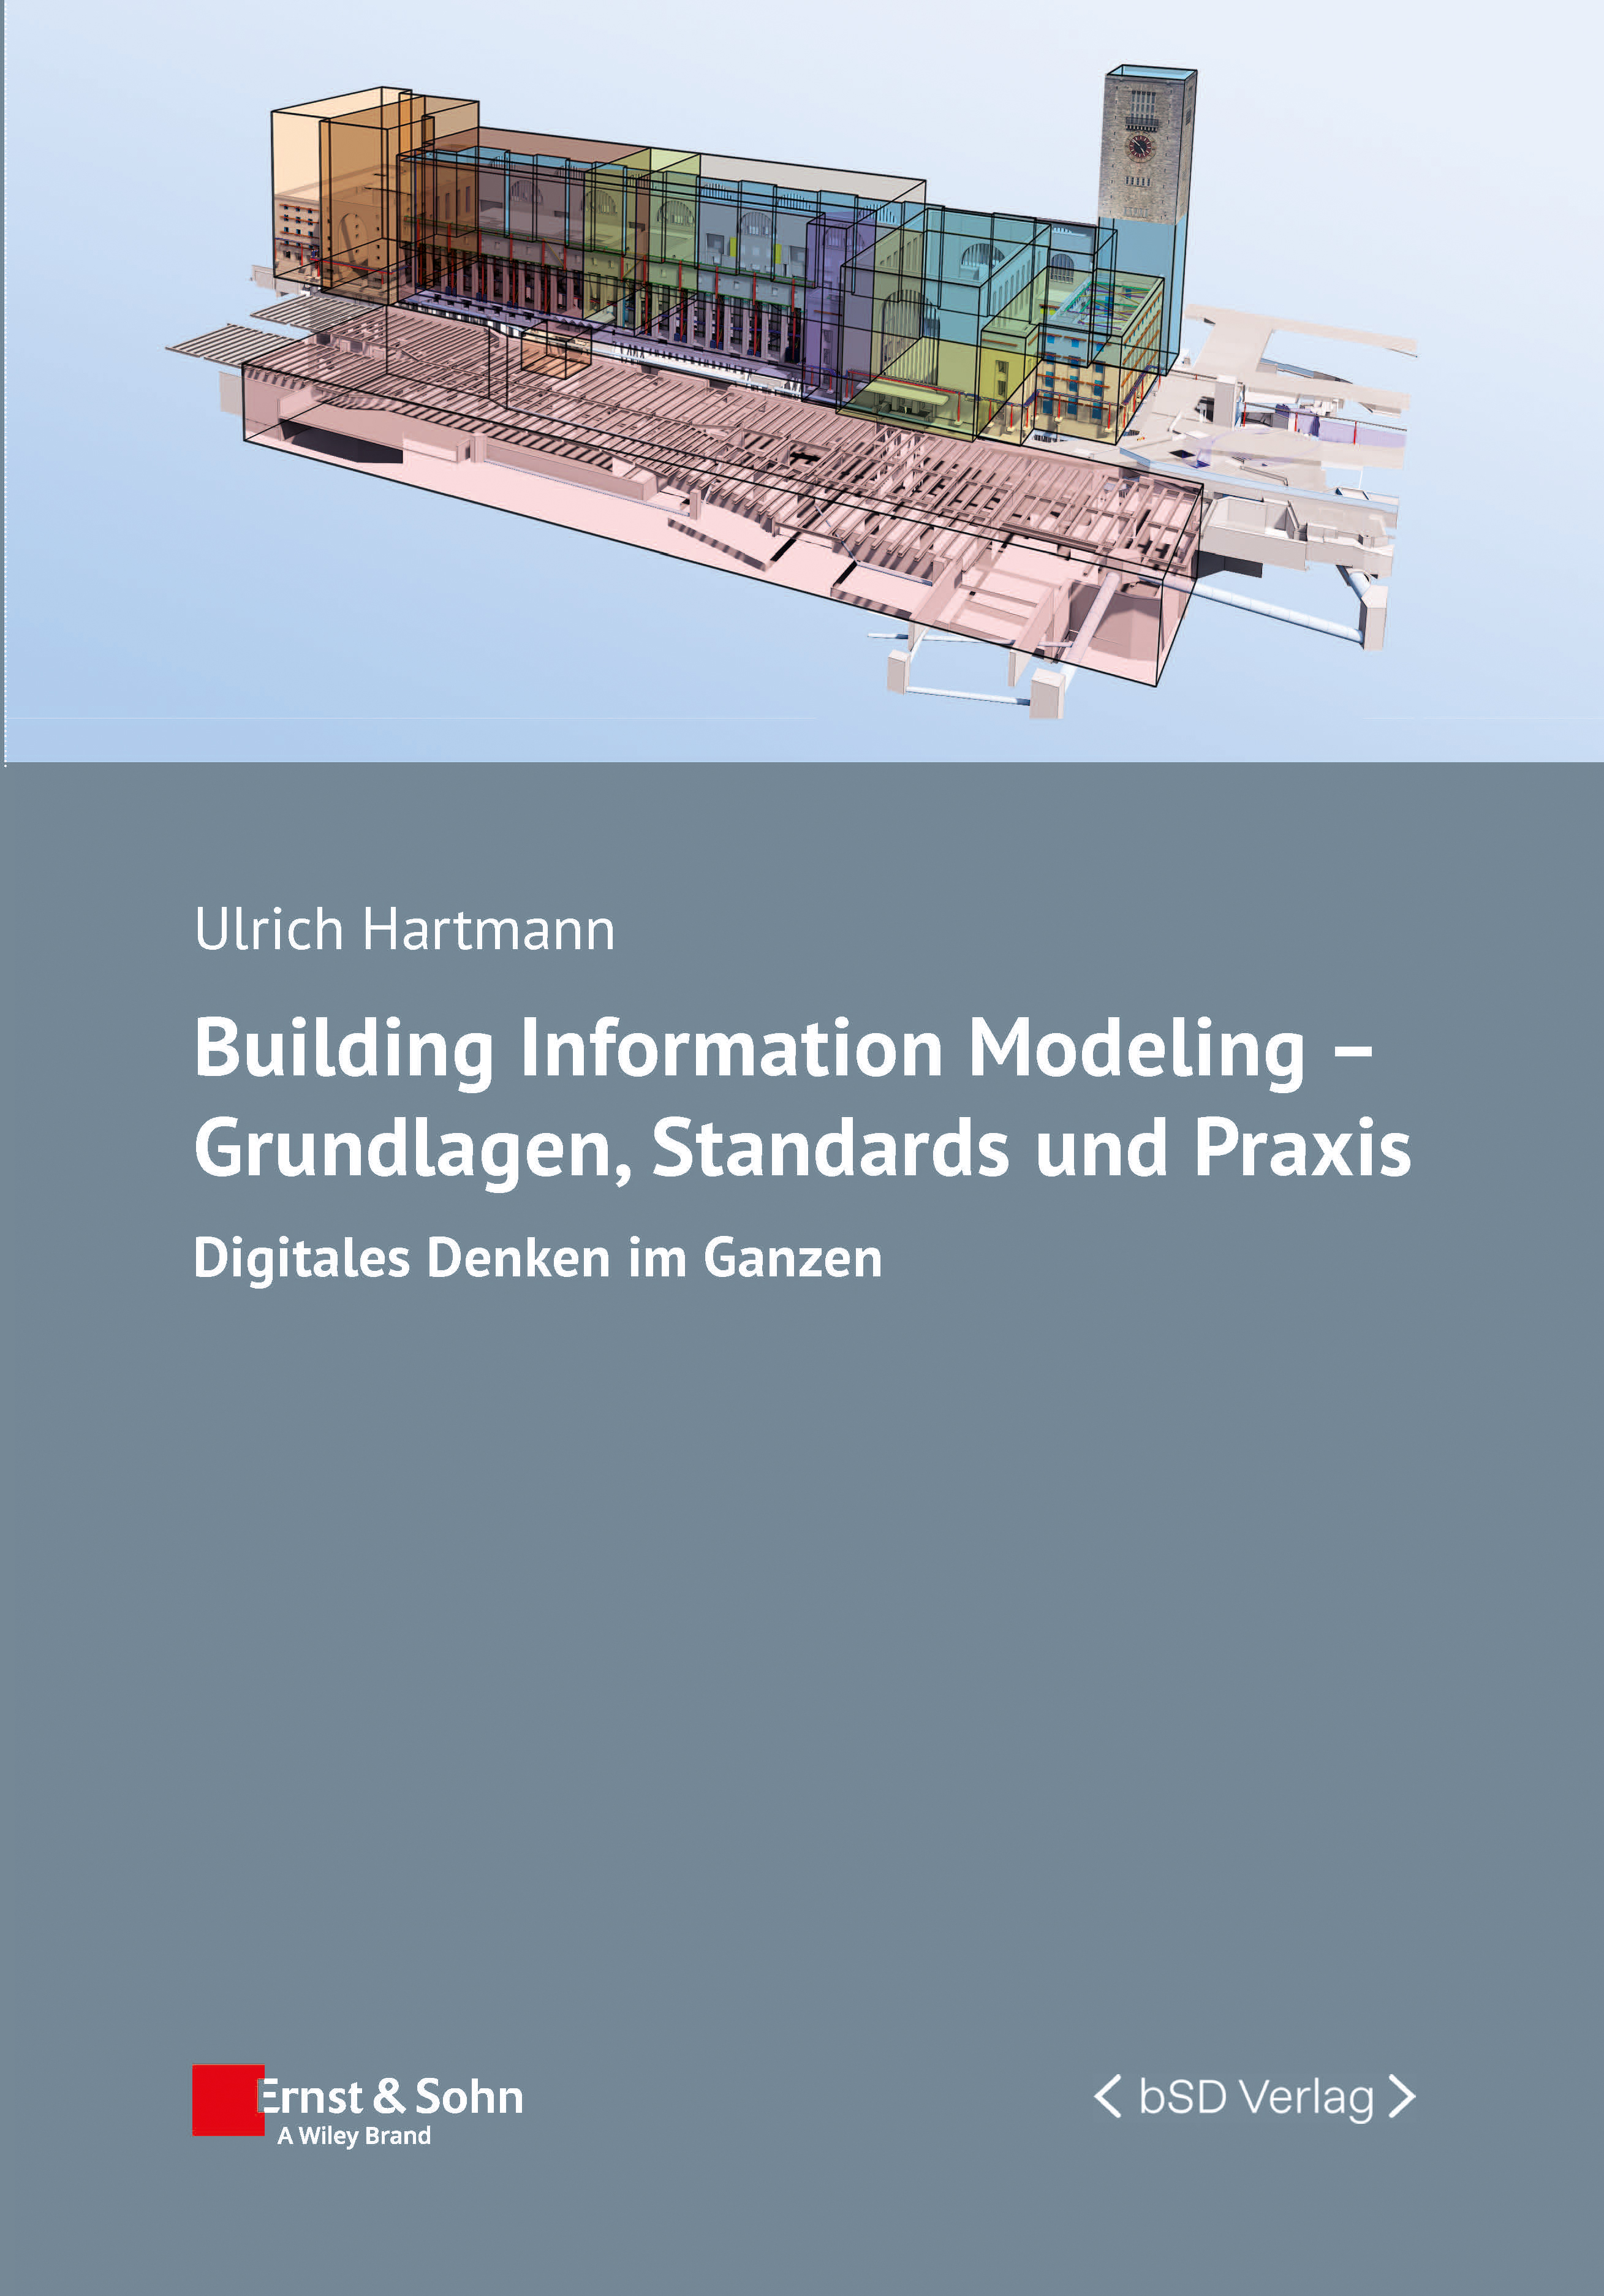 bSD Verlag/Kooperation: Building Information Modeling